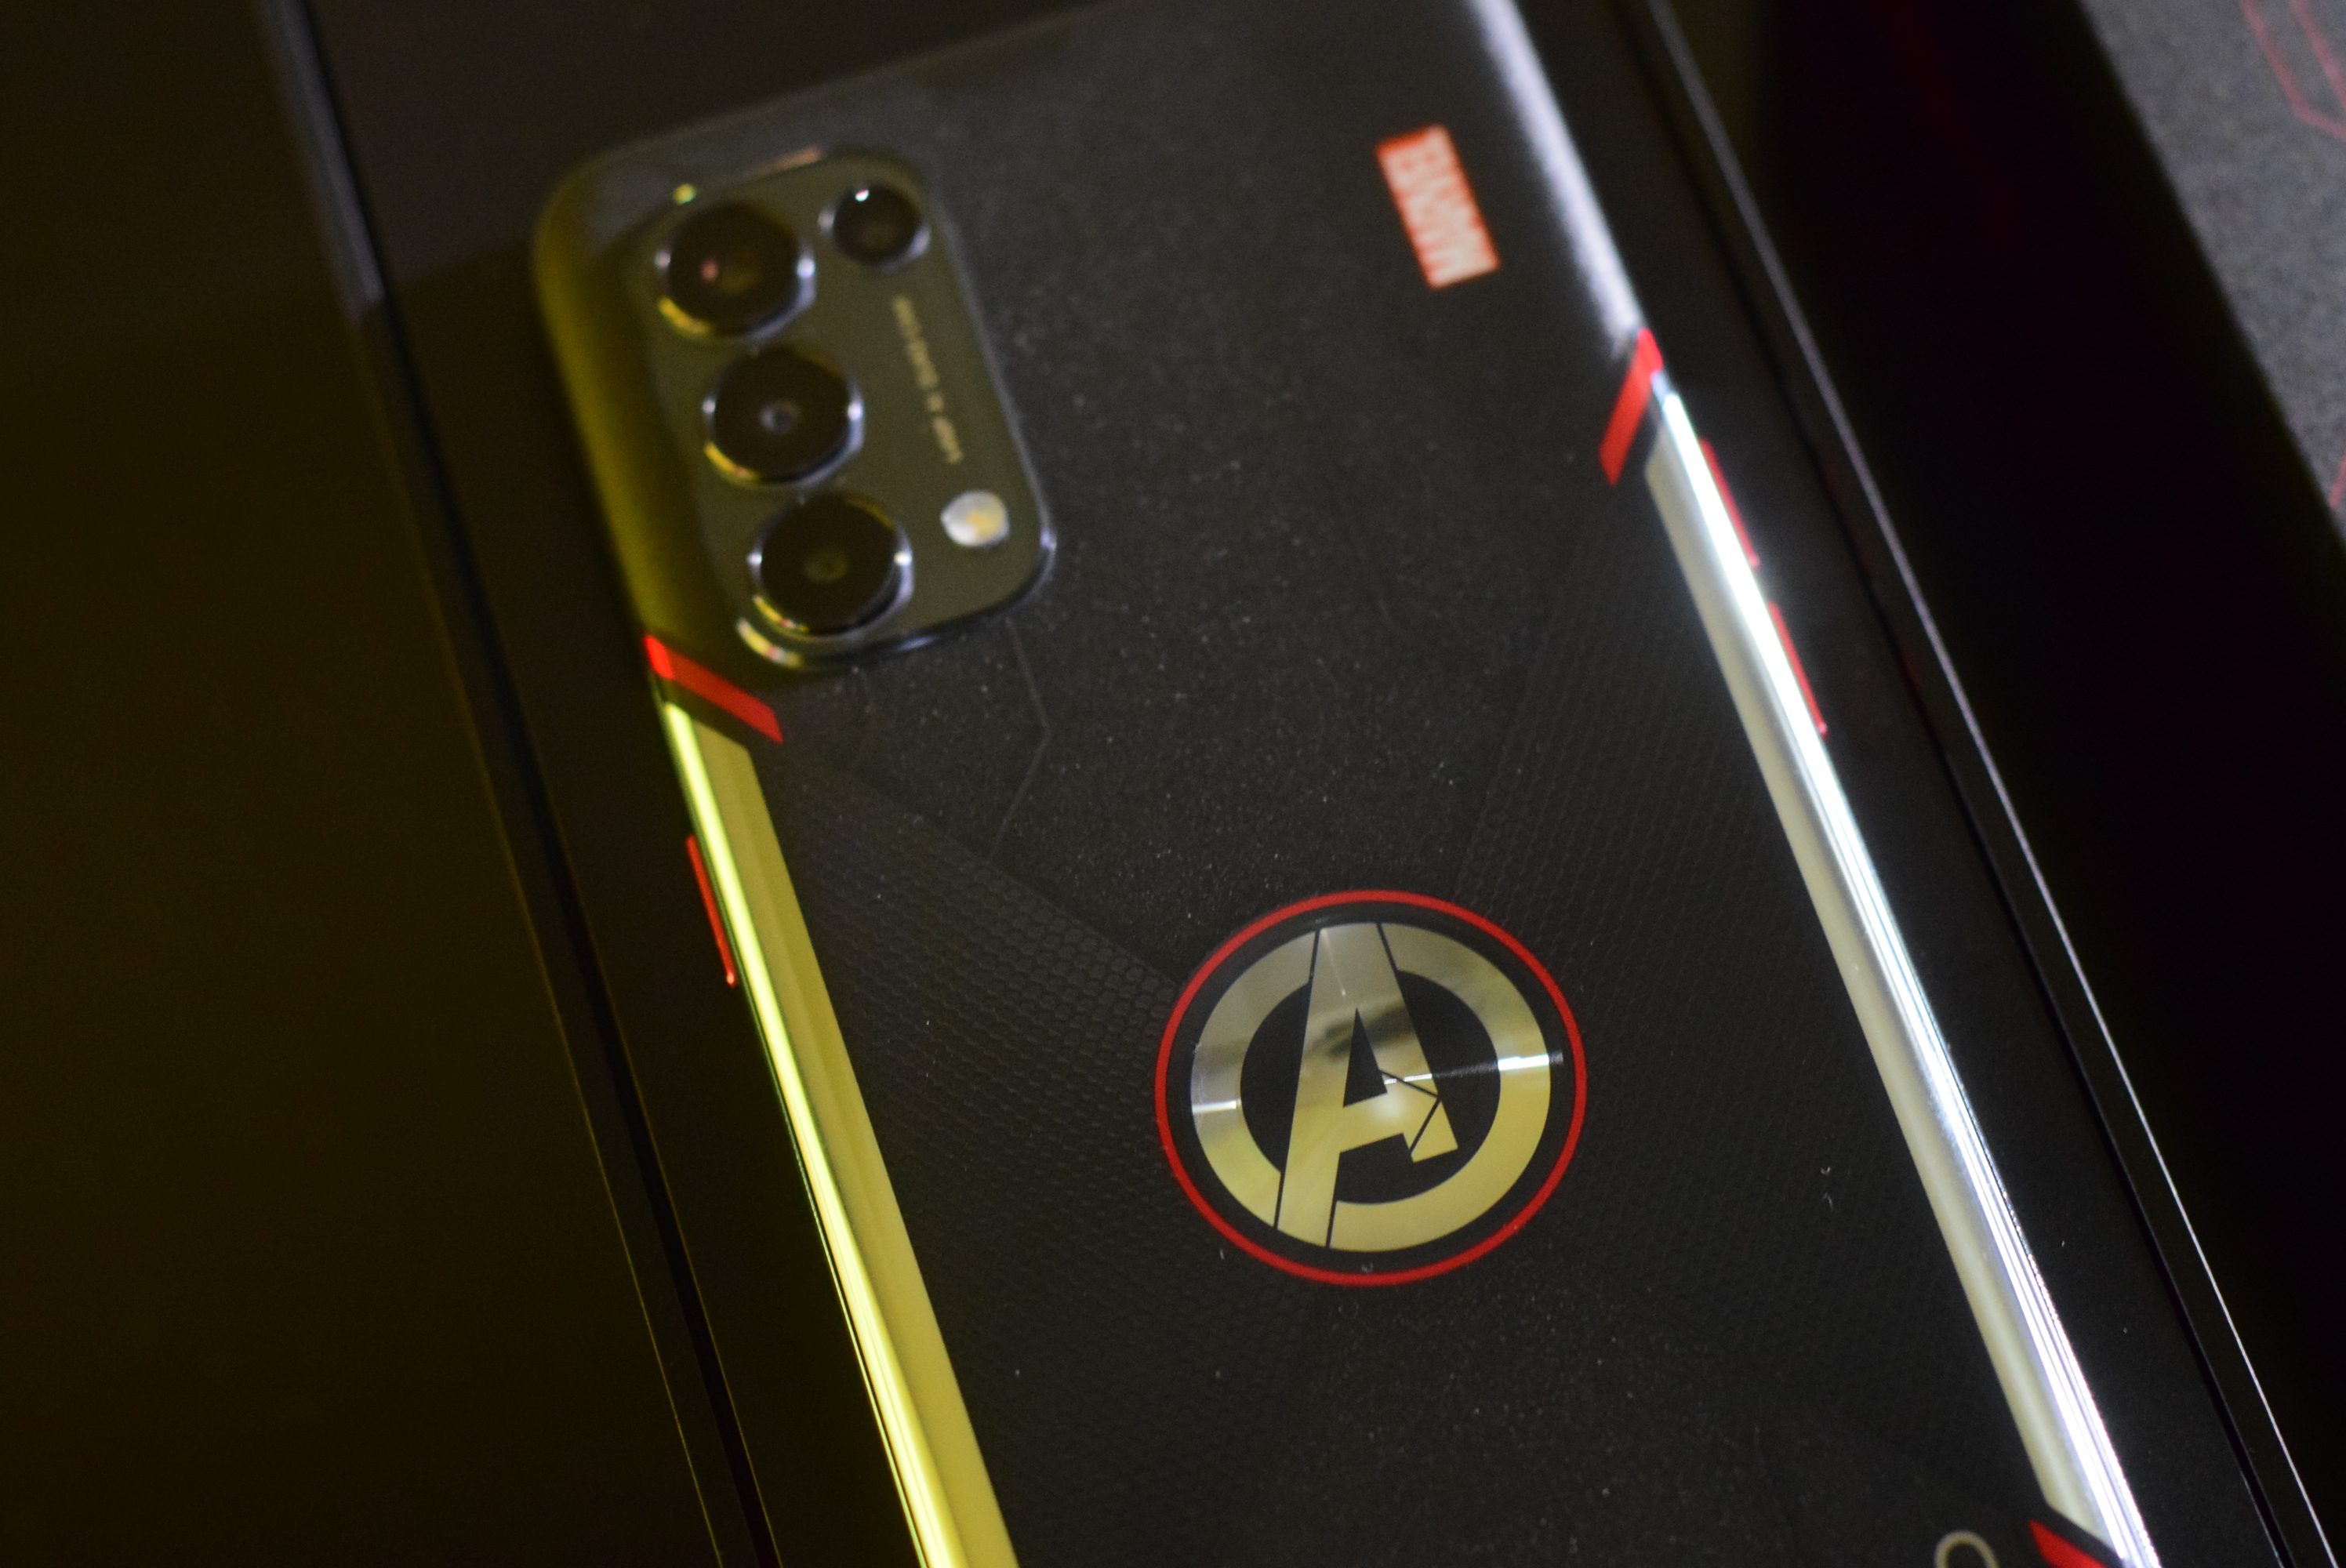 Sự kết hợp giữa OPPO và Marvel đã cho ra đời chiếc điện thoại đột phá về thiết kế và công nghệ – OPPO Reno5 Marvel Edition. Không chỉ là một chiếc điện thoại thông minh, OPPO Reno5 Marvel Edition còn là một siêu anh hùng của thế giới di động, đánh dấu bước tiến mới trên con đường phát triển công nghệ.